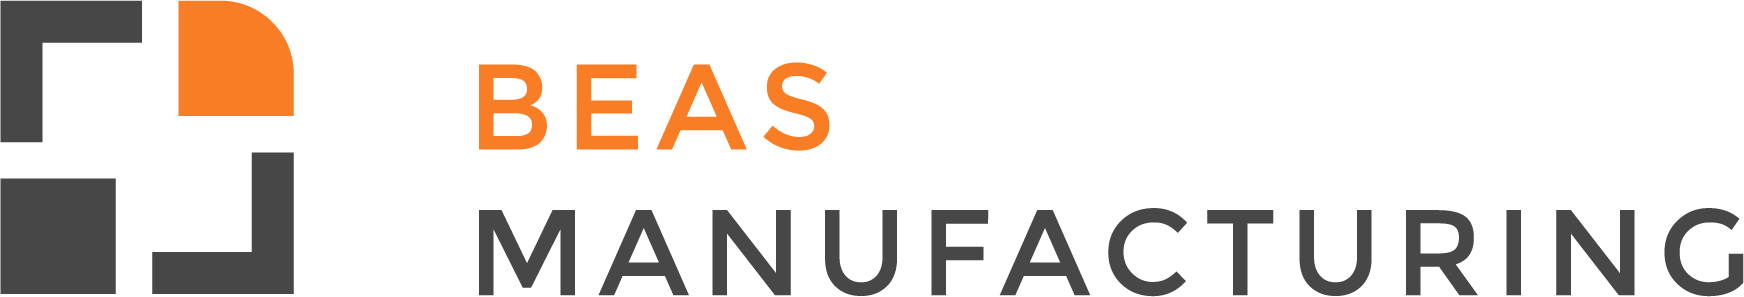 beas_manufacturing_logo